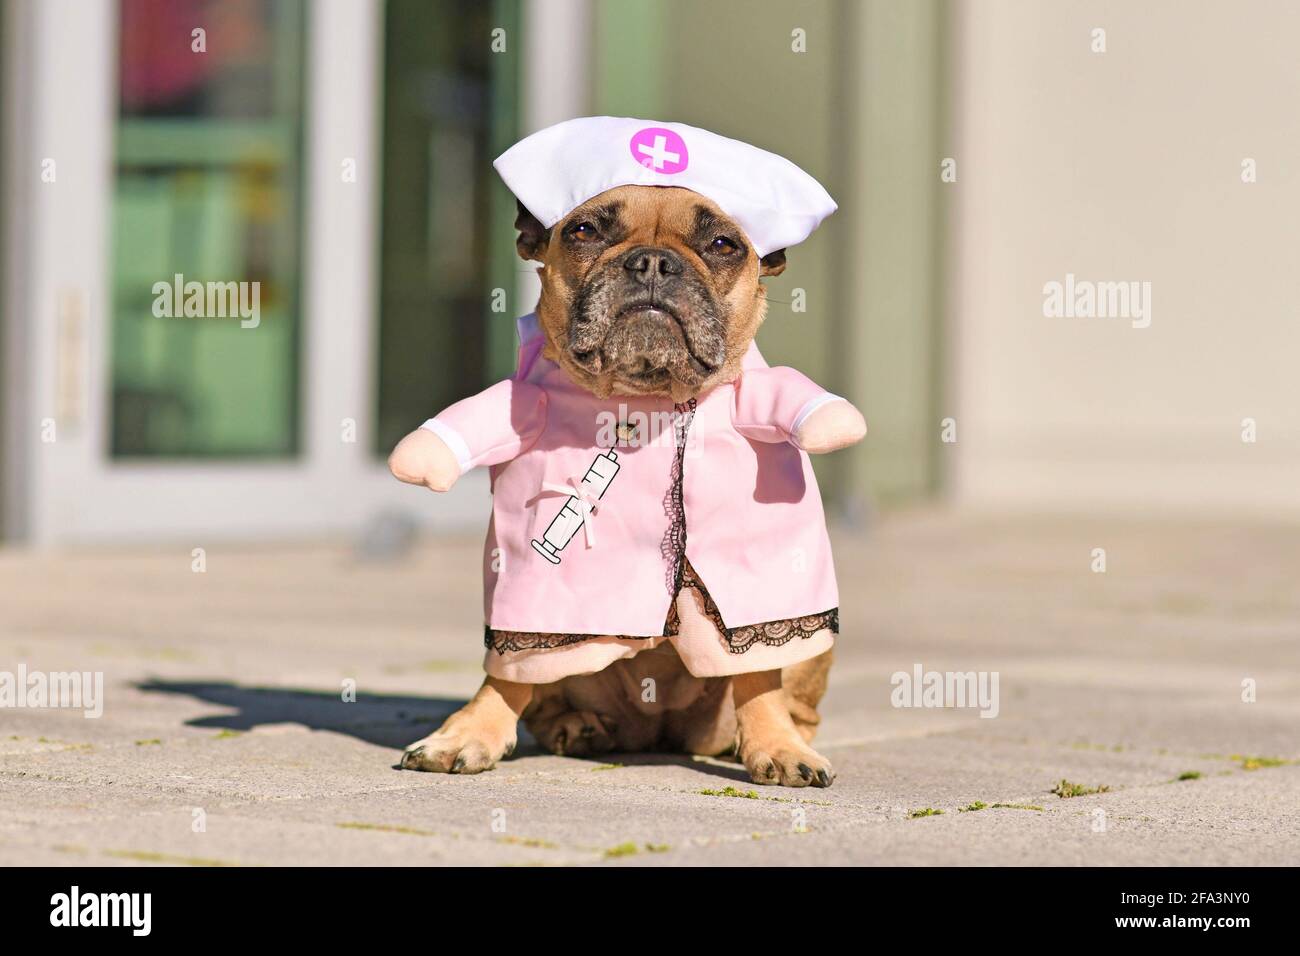 https://c8.alamy.com/compit/2fa3ny0/bulldog-francese-vestito-con-costume-da-infermiera-rosa-con-armi-false-2fa3ny0.jpg